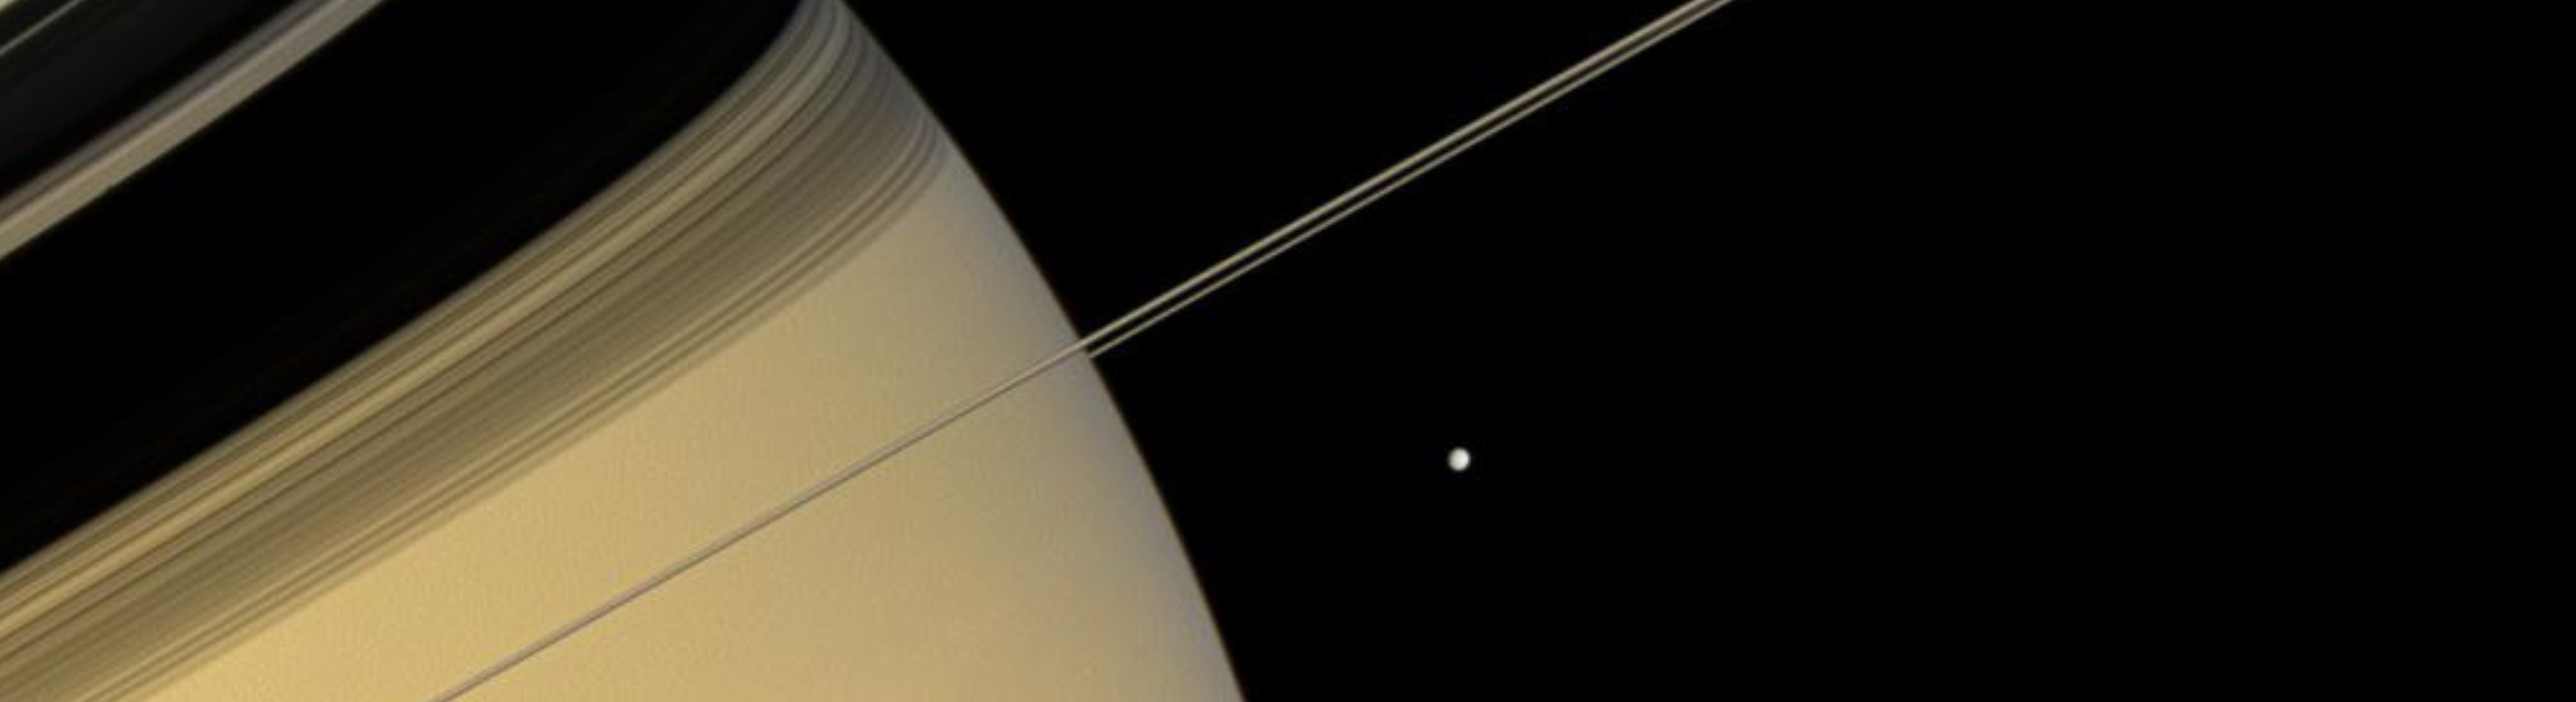 Saturn banner